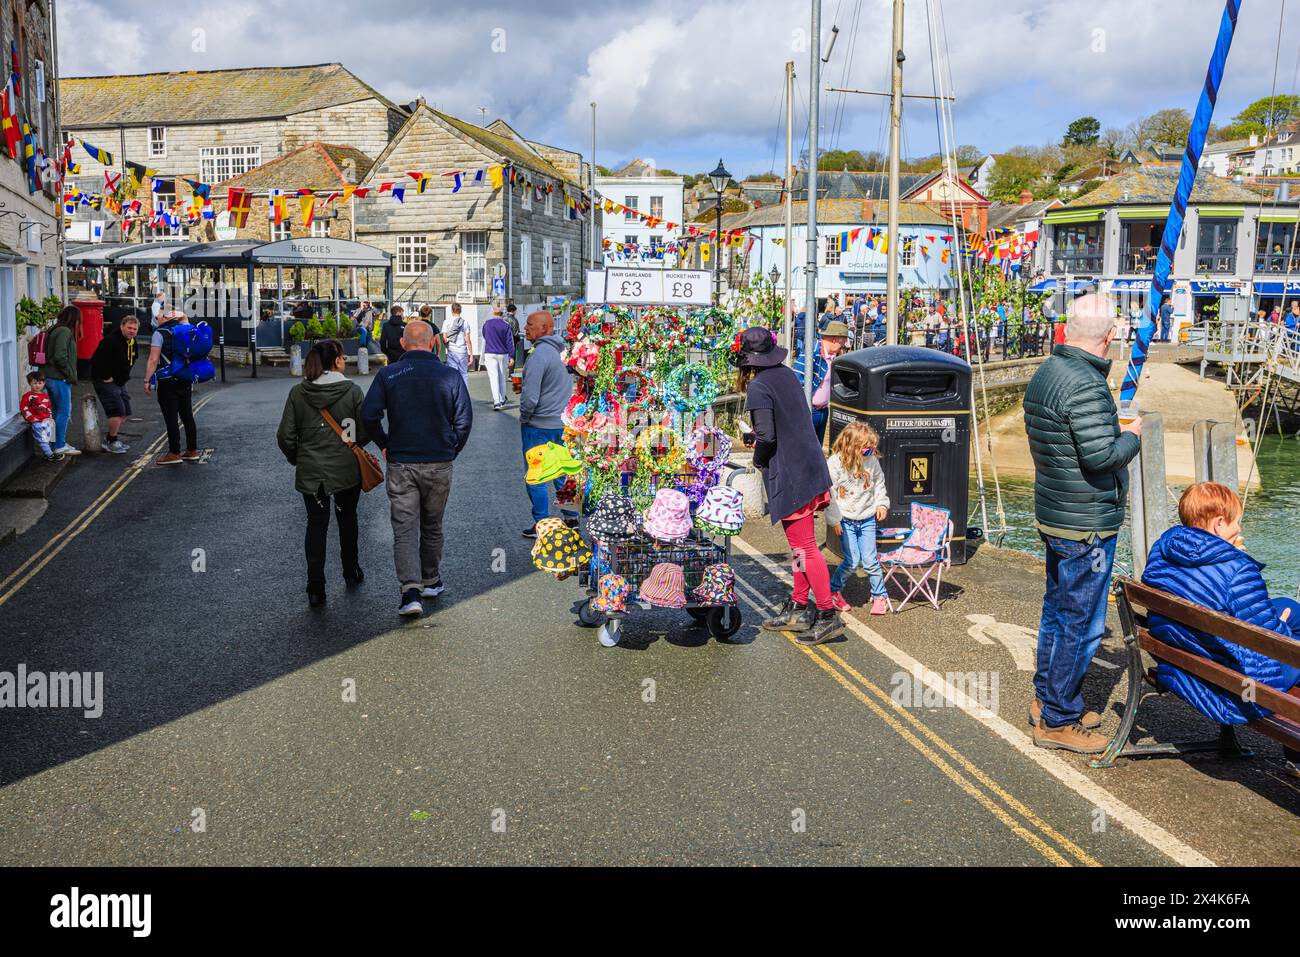 Ghirlande e cappelli in vendita presso il porto per il festival 'Obby' Oss, un evento popolare annuale del May Day a Padstow, una città costiera nella Cornovaglia settentrionale Foto Stock